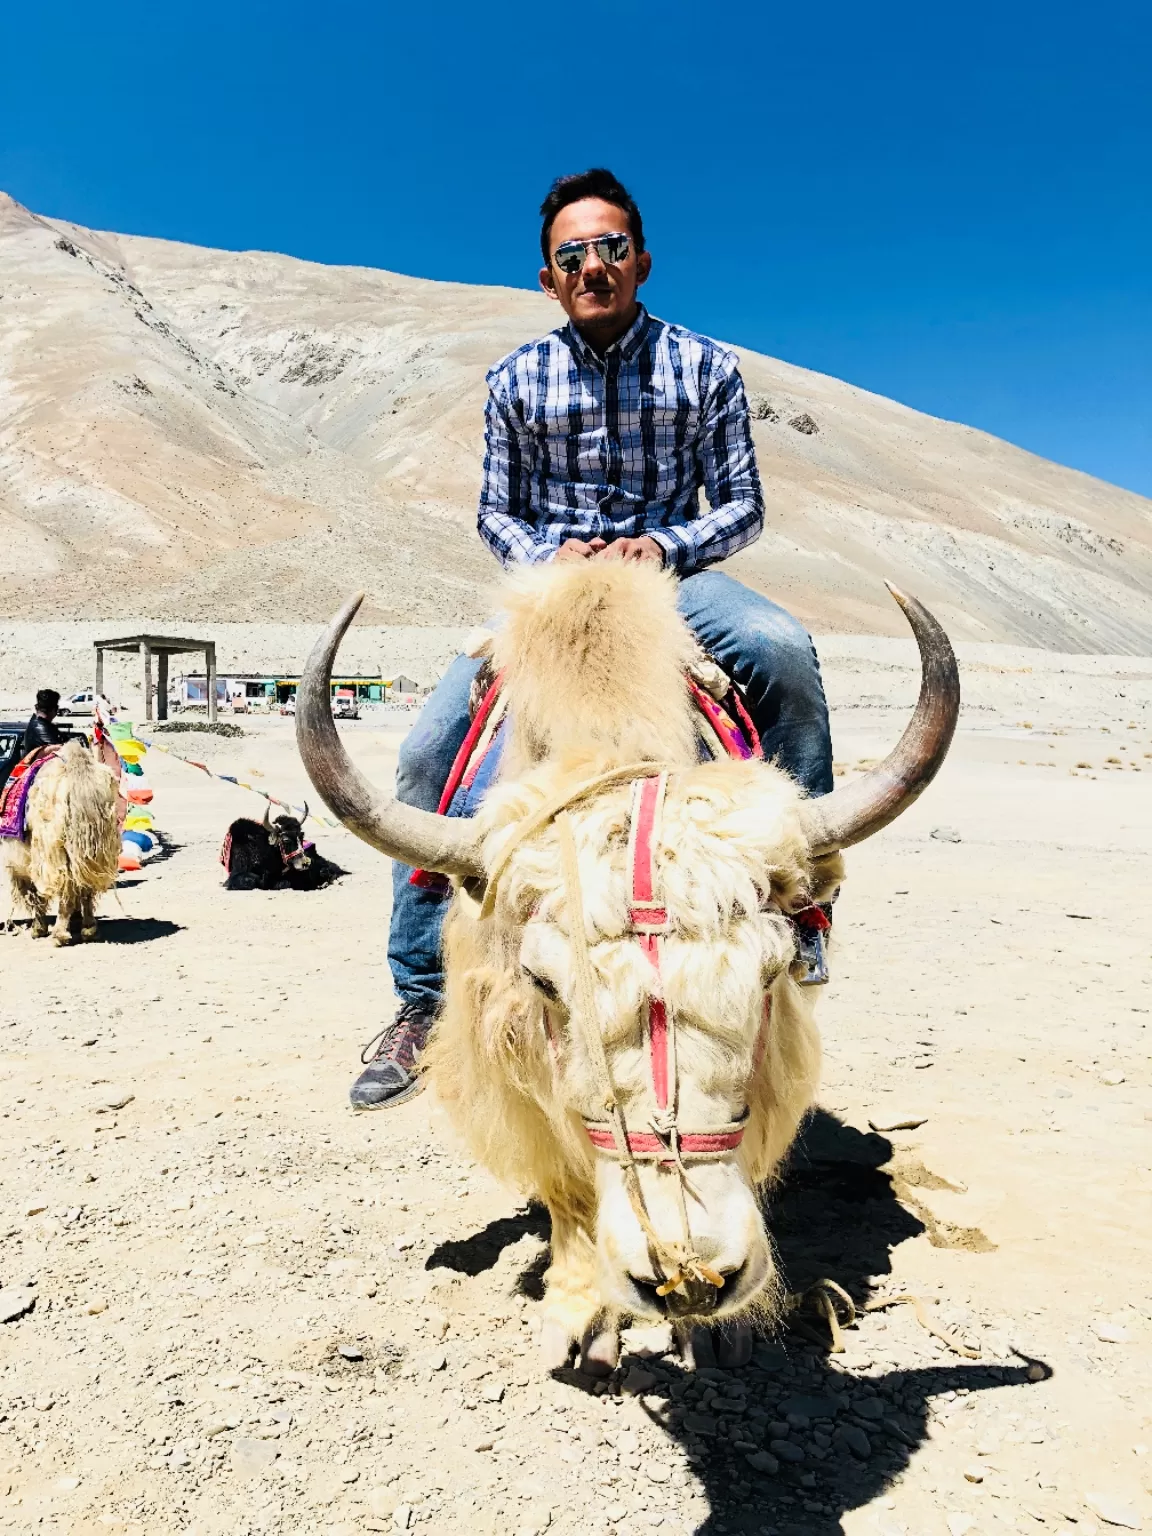 Photo of Ladakh By Sagar Khandelwal